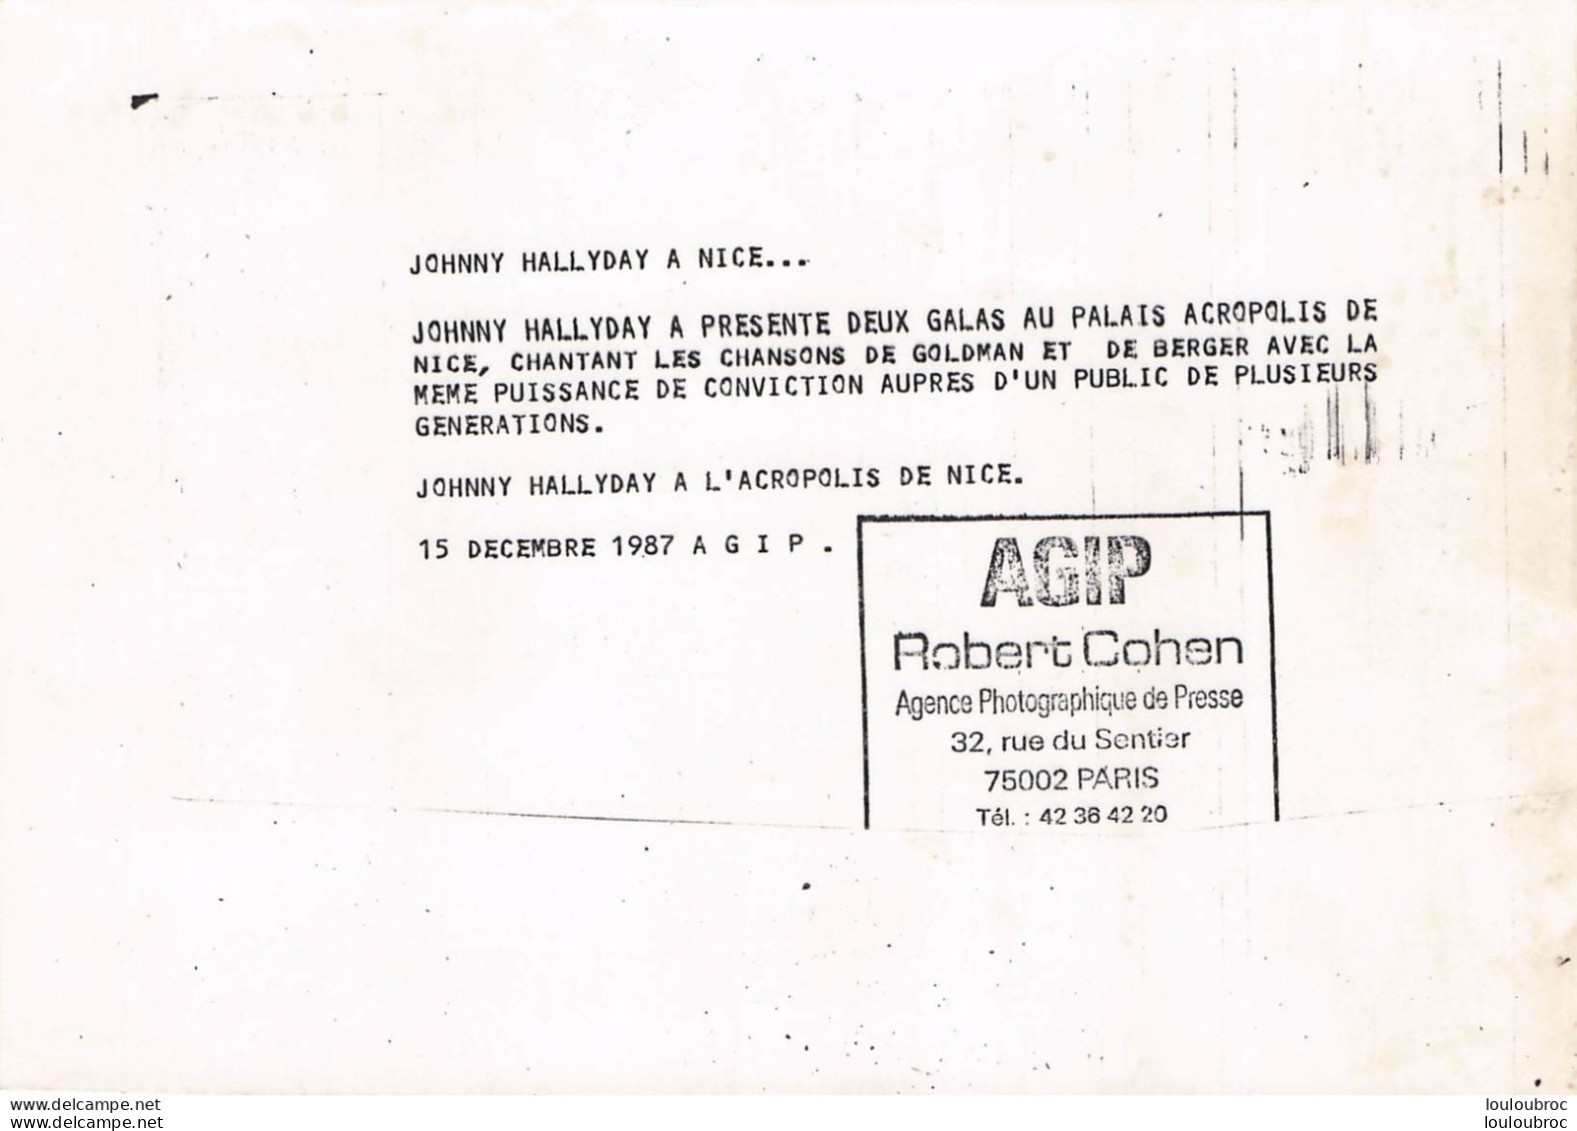 JOHNNY HALLYDAY 1987 A L'ACROPOLIS DE NICE CHANTANT GOLDMAN ET BERGER  PHOTO DE PRESSE ORIGINALE 21X15CM - Berühmtheiten